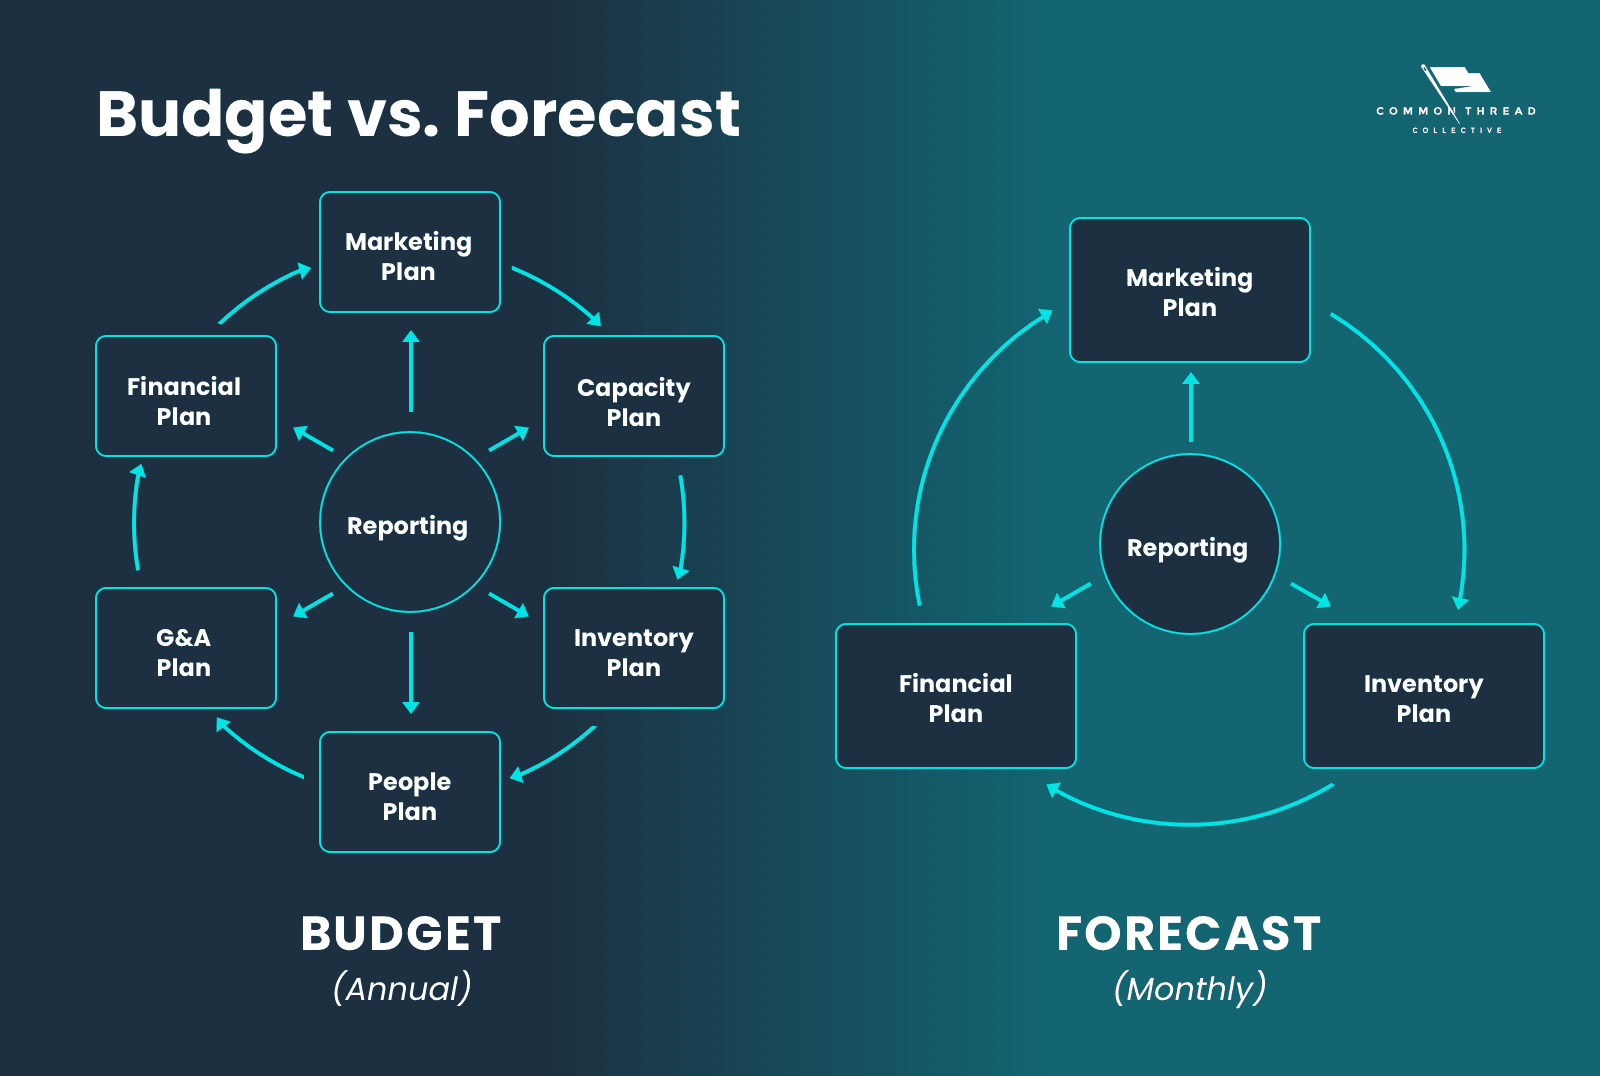 Budget vs. Forecast